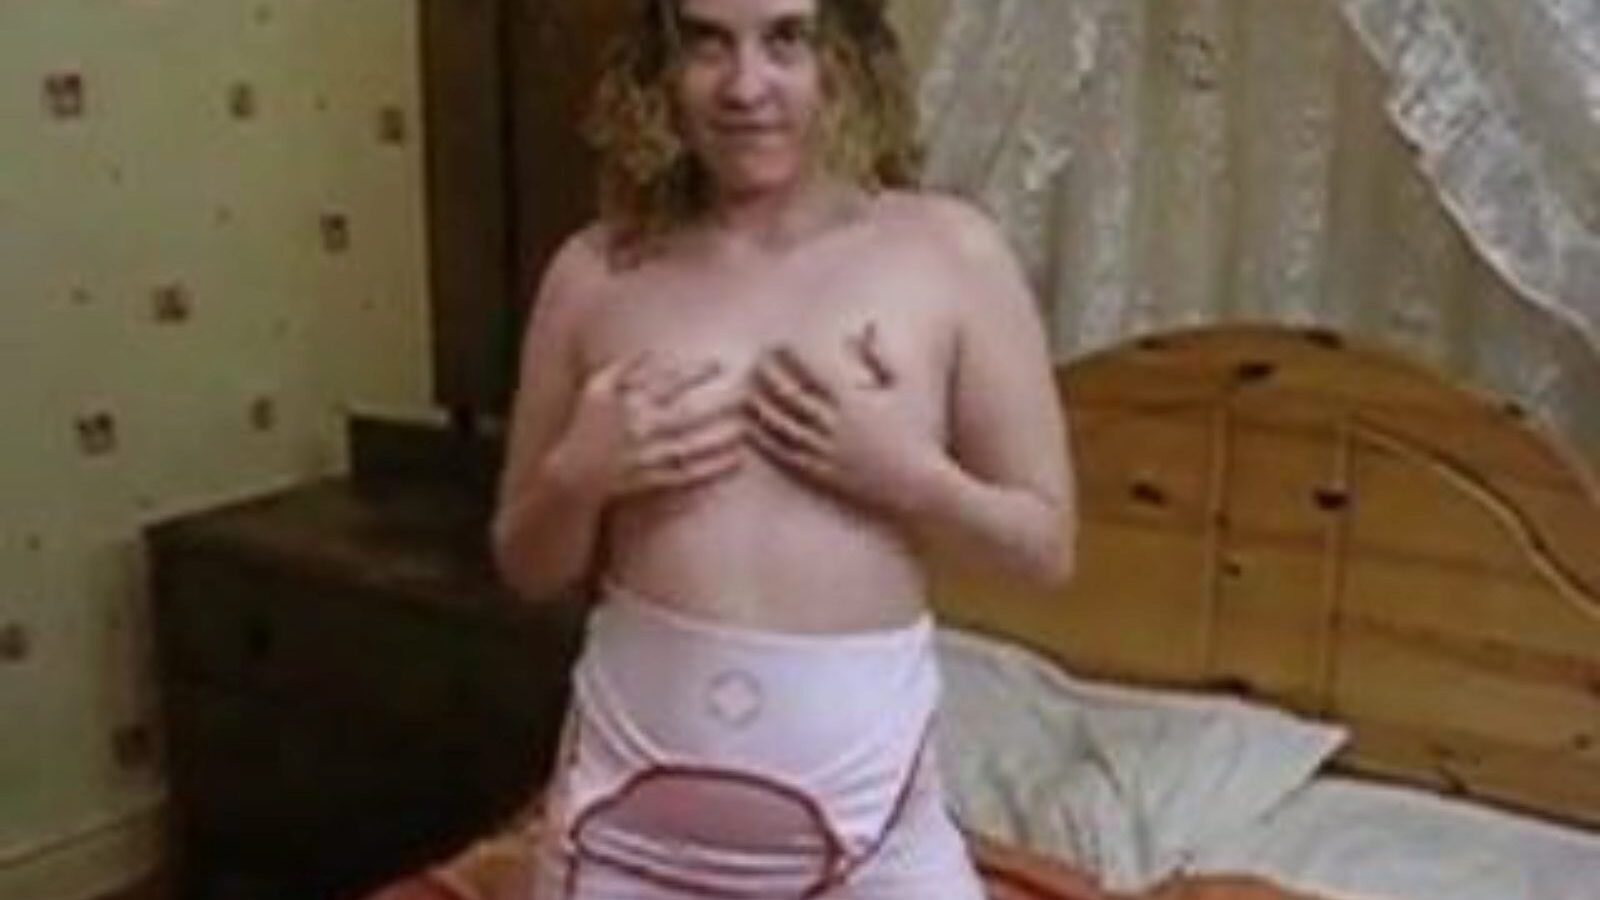 nővér ad egy szopást, és kap szar, pornó 1f: xhamster nézni nővér ad egy szopást, és kap szar epizódot a xhamster, az óriási szeretetteljes cső weboldal sok tonnányi ingyenes brit ingyenes szopás tube és szex pornó videók